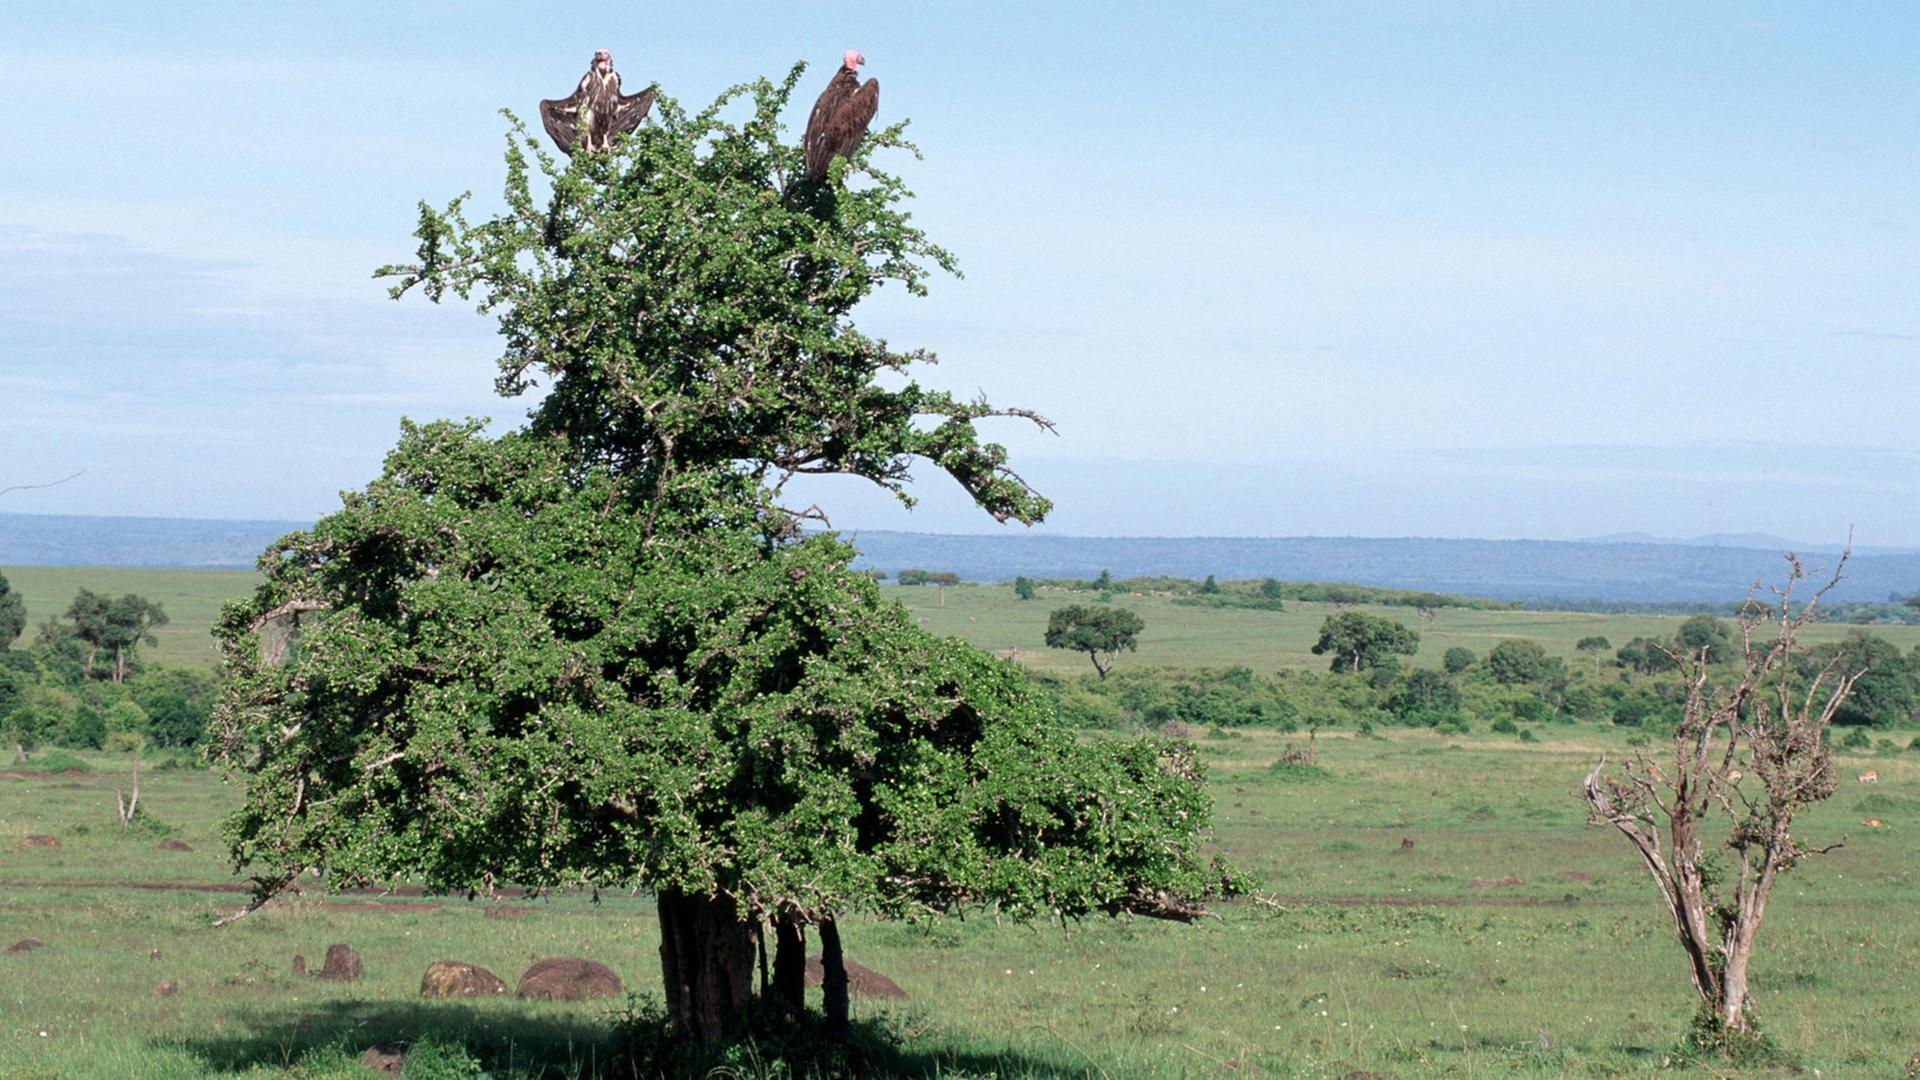 Blick über die Landschaft des Massai Mara Nationalparks in Kenia. Auf einem Baum sitzen zwei Geier und beobachten ihre Umgebung auf der Suche nach Nahrung.